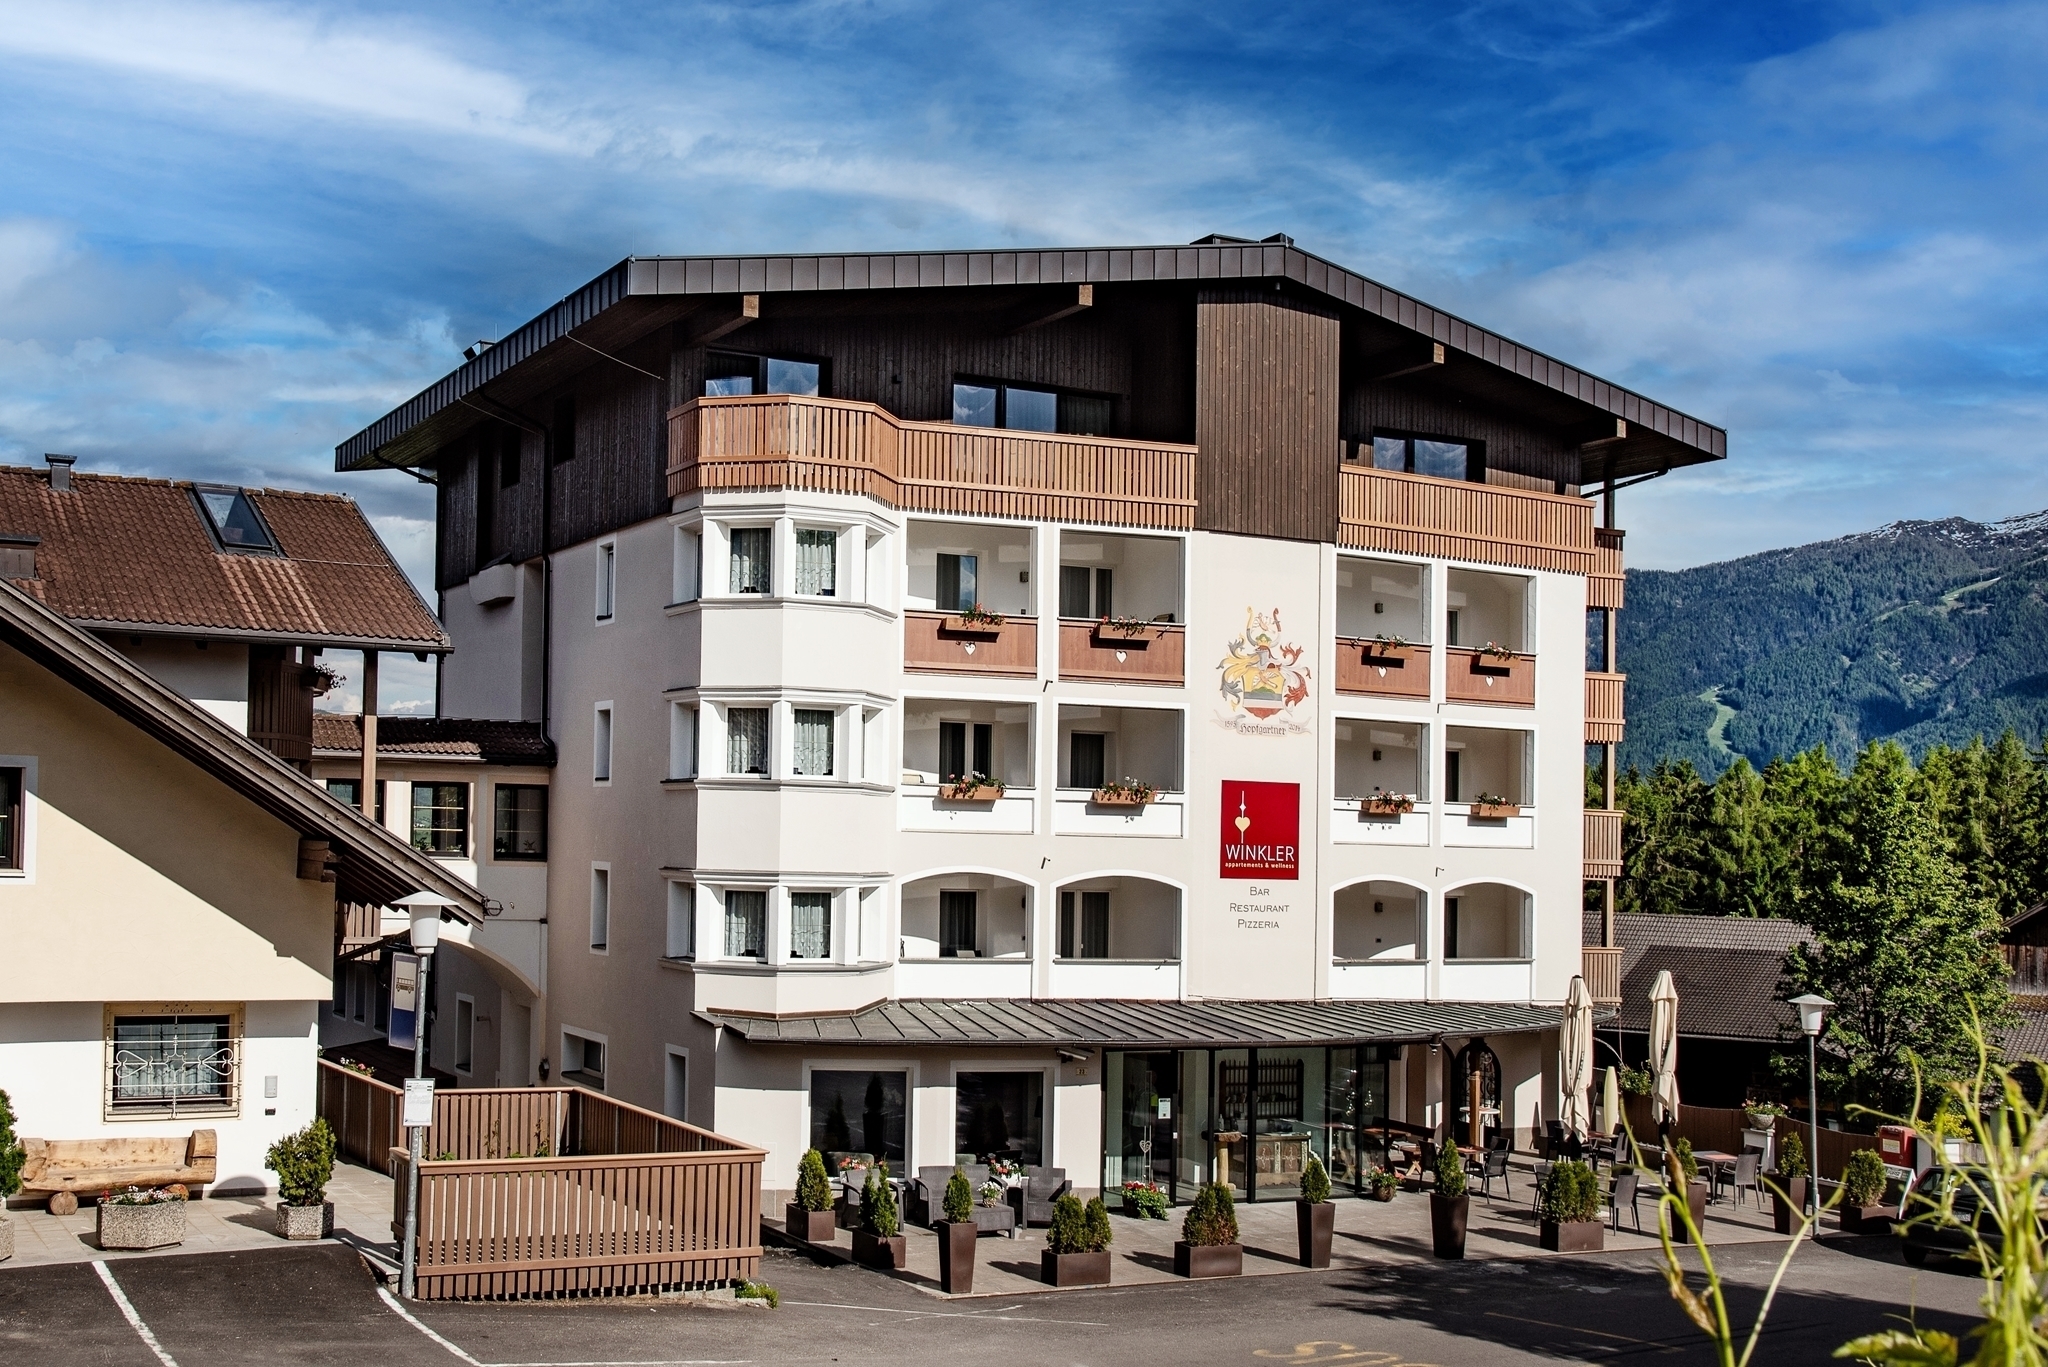 Appartements & Wellness Winkler - Pfalzen at Mt. Kronplatz